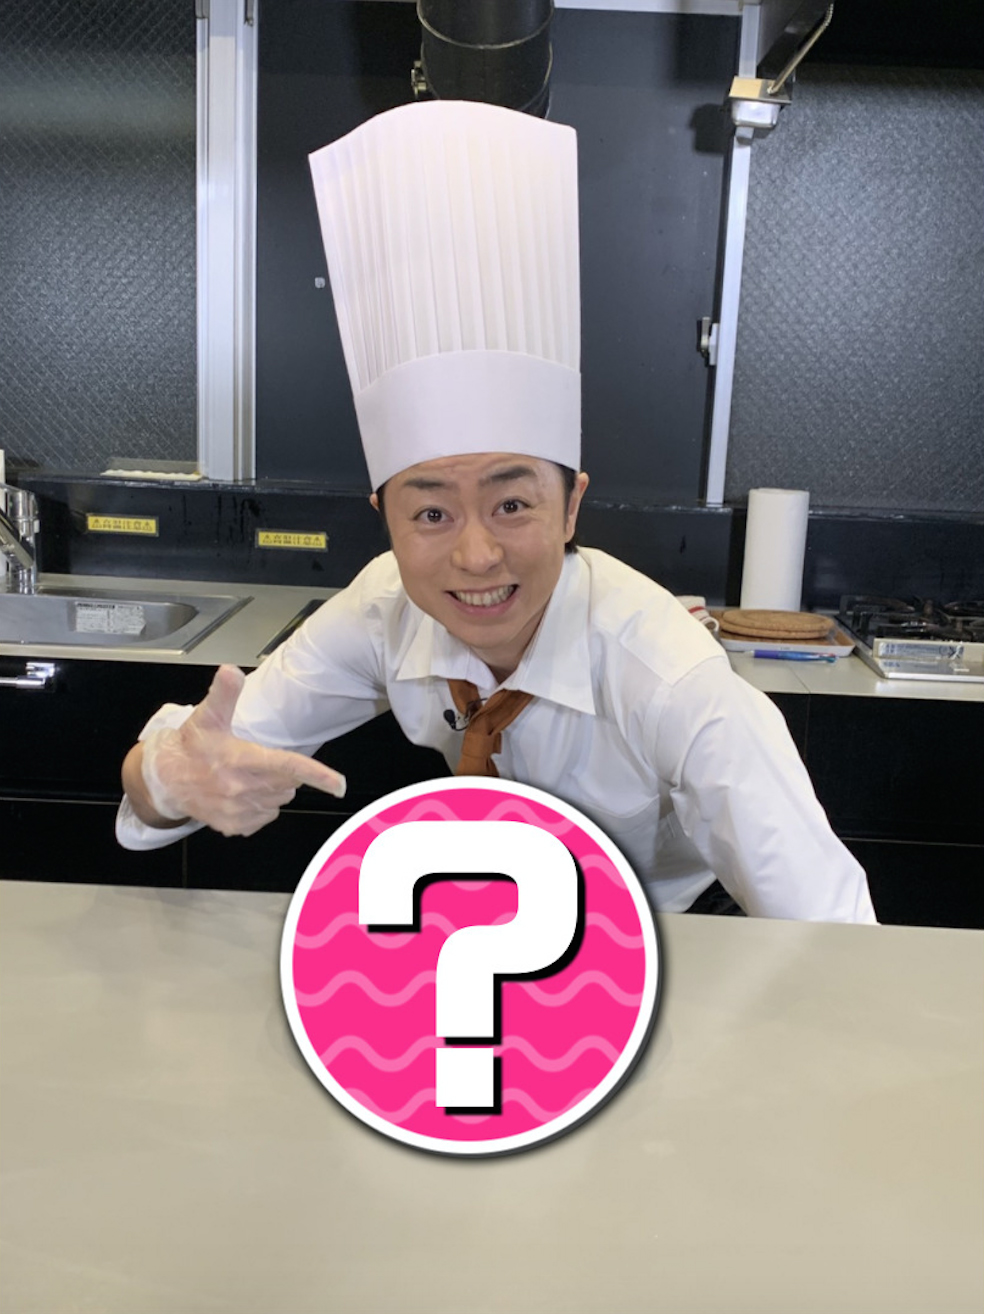 櫻井翔、『SHOWチャンネル』でケーキ作りに挑戦